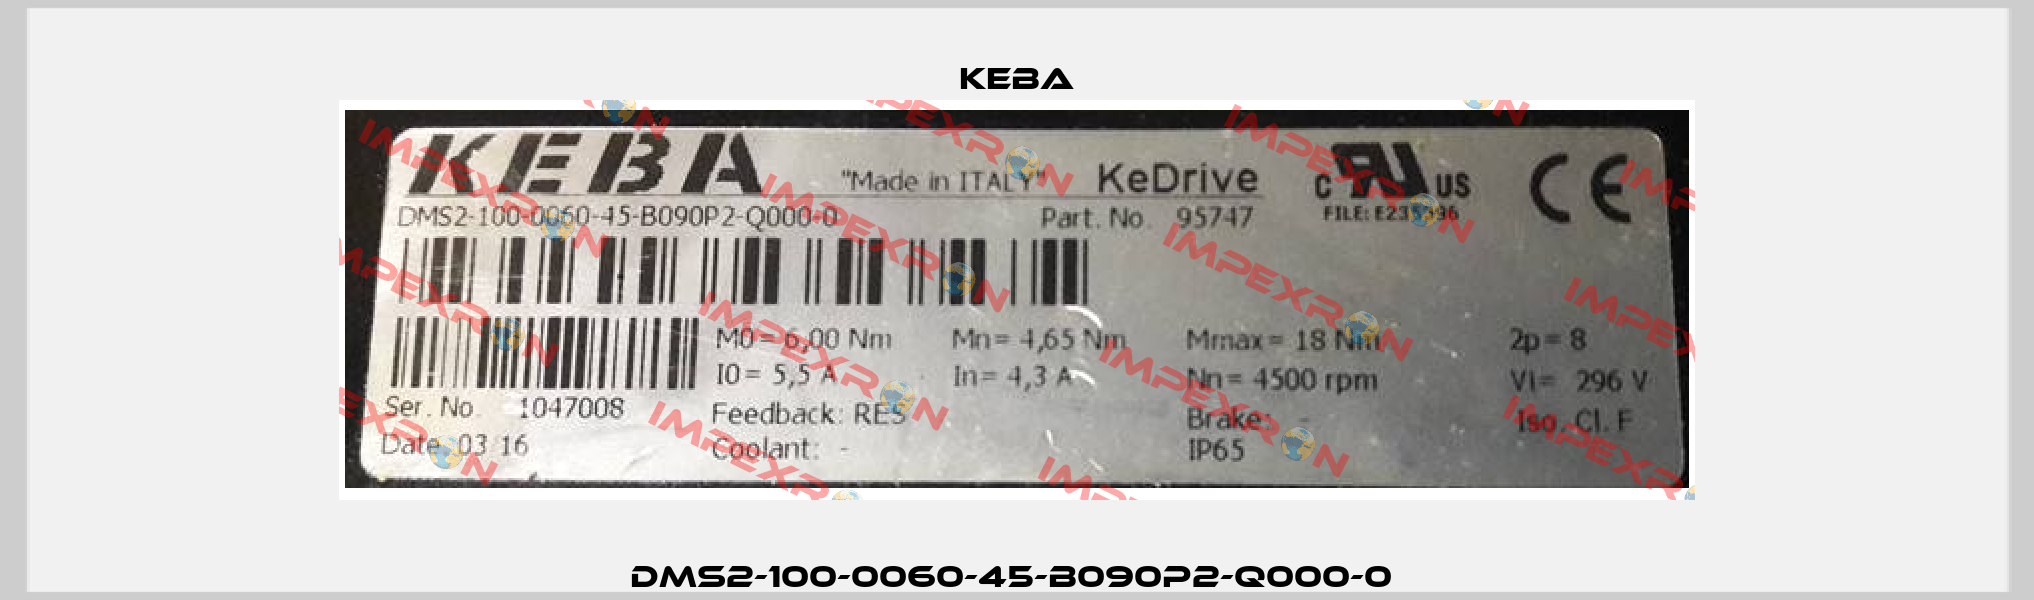 DMS2-100-0060-45-B090P2-Q000-0  Keba